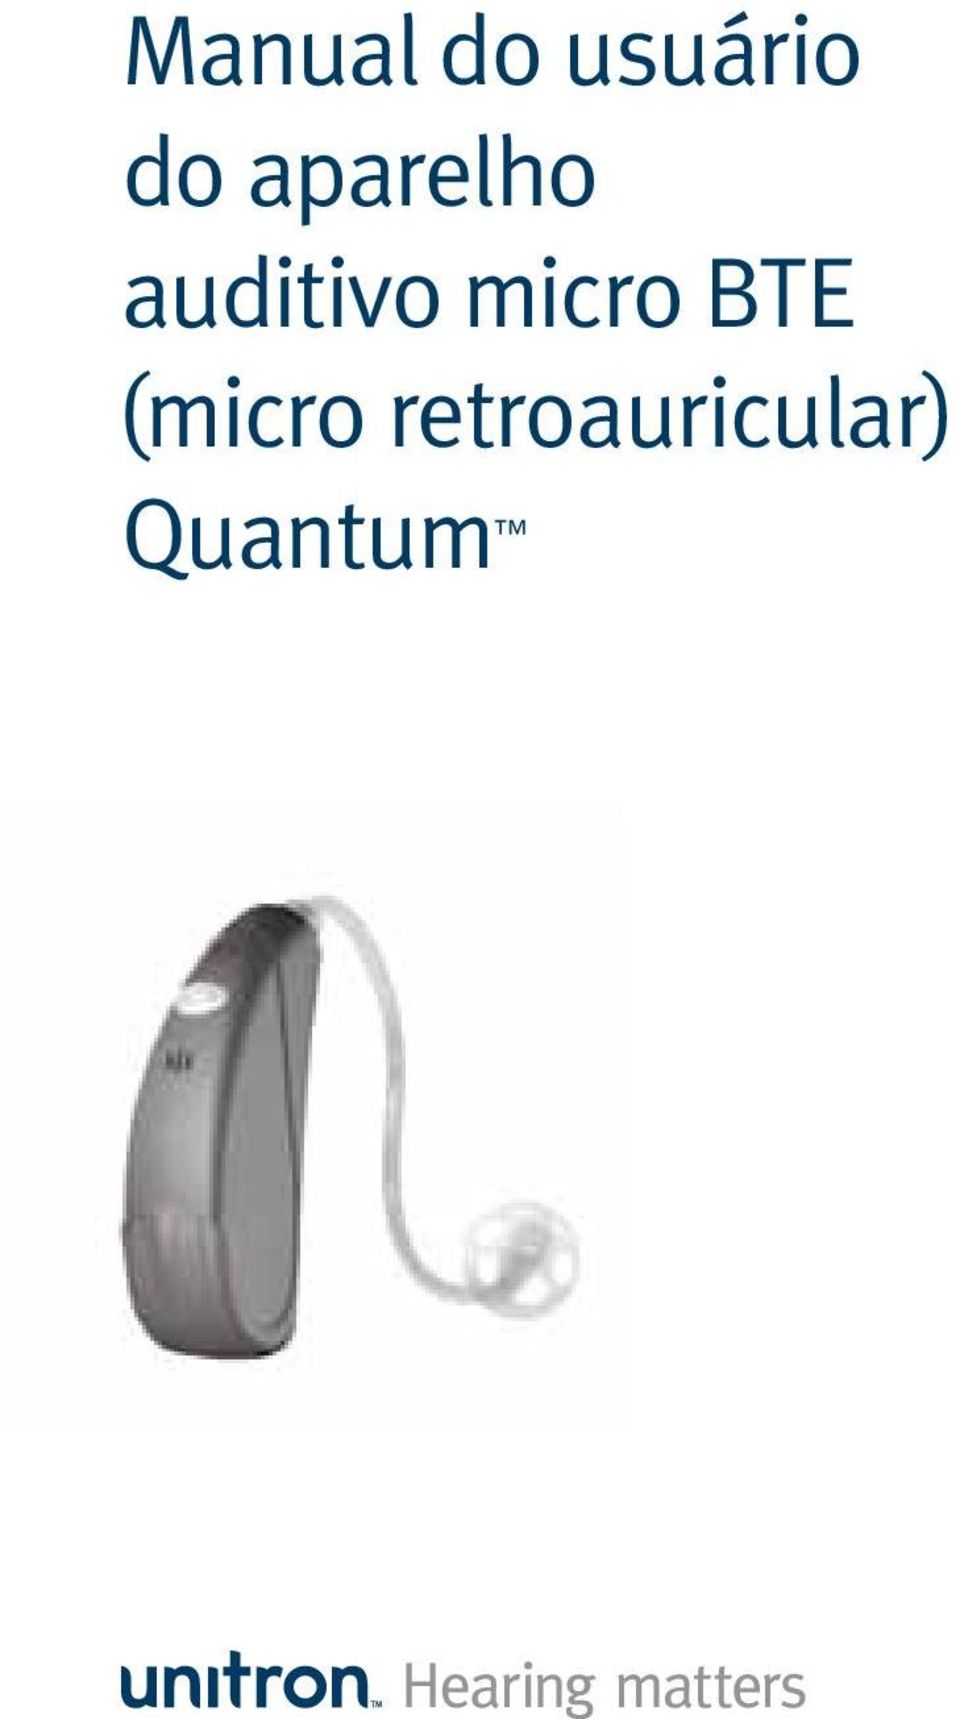 auditivo micro BTE